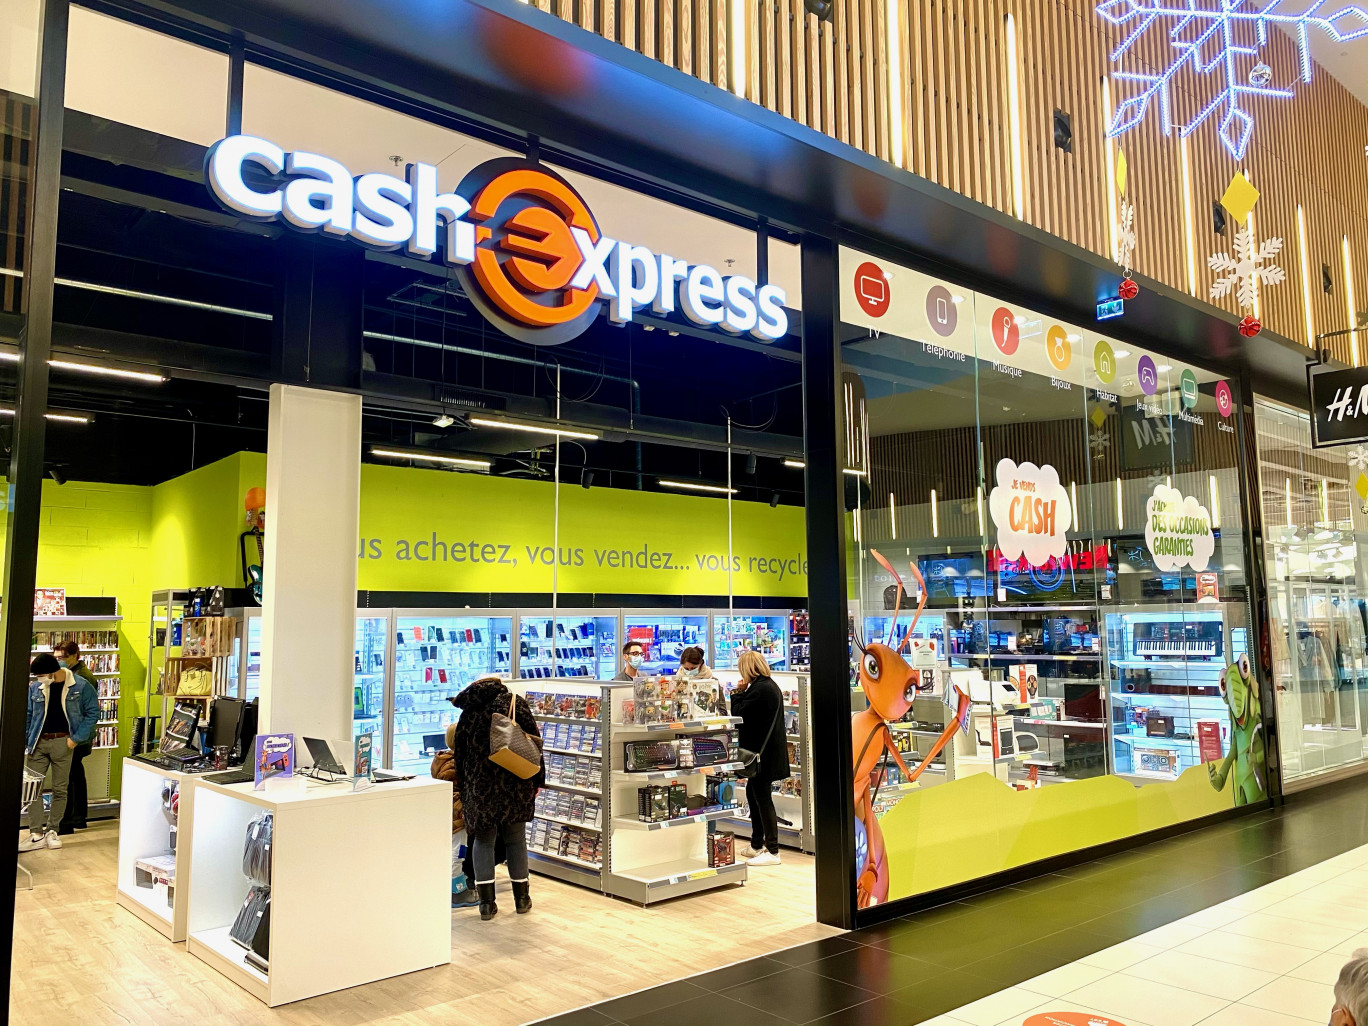 Cash Express s’installe dans un centre commercial d’envergure